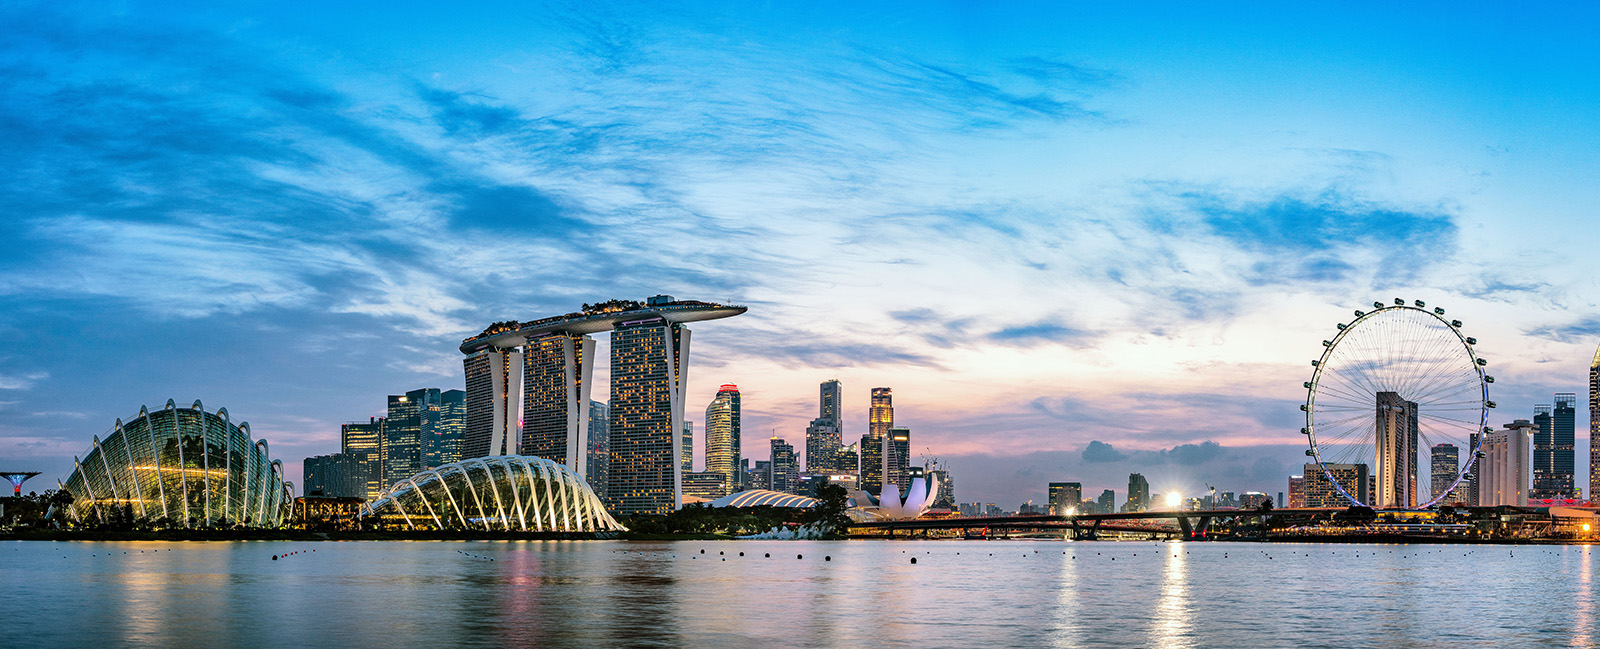 singapore-skyline-at-dusk